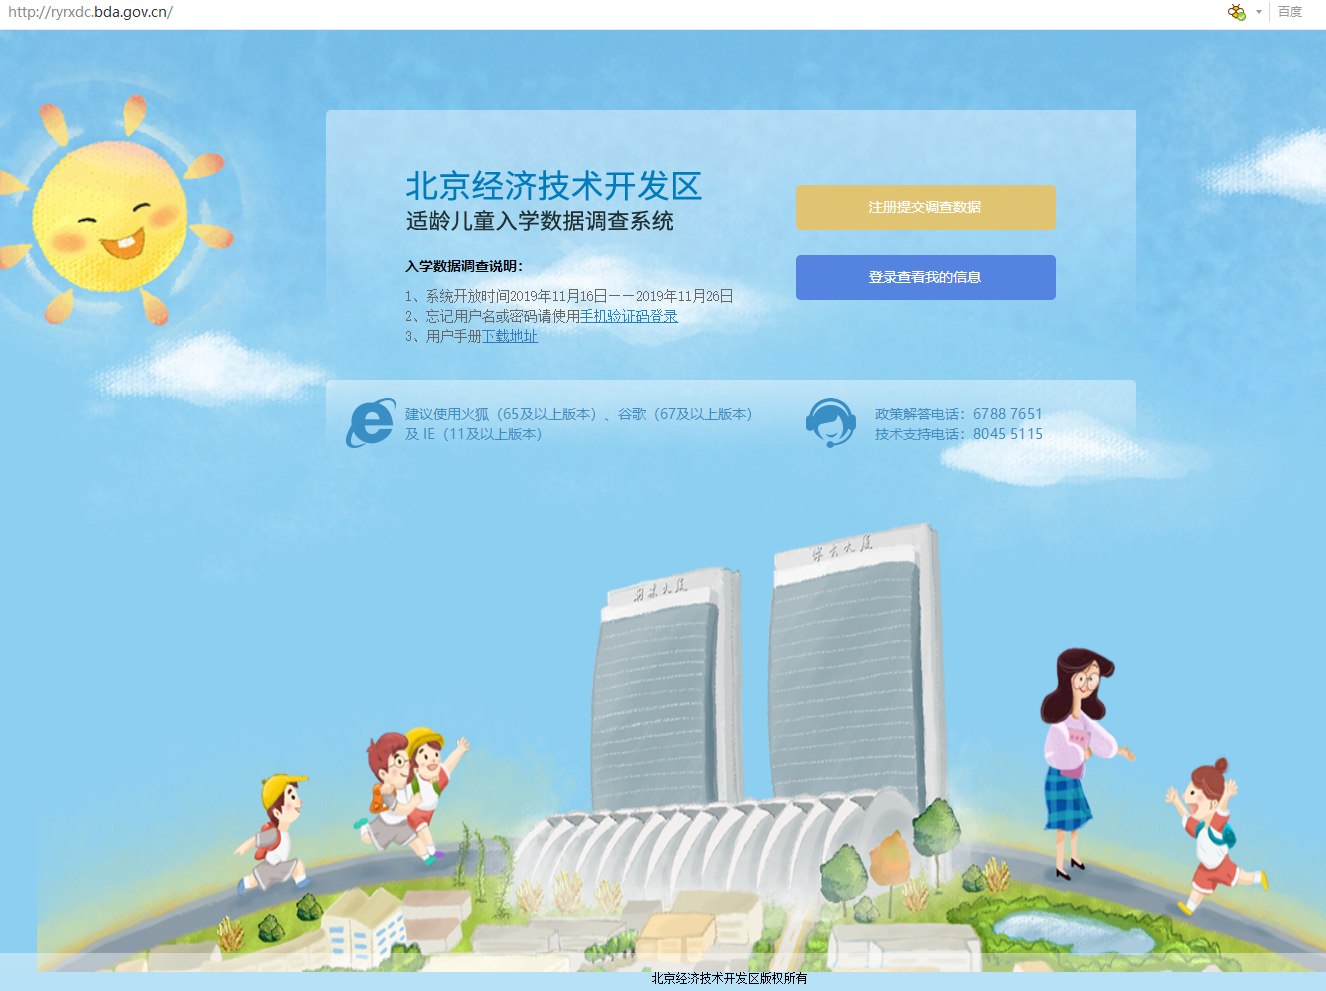 2020年北京开发区小学入学调查